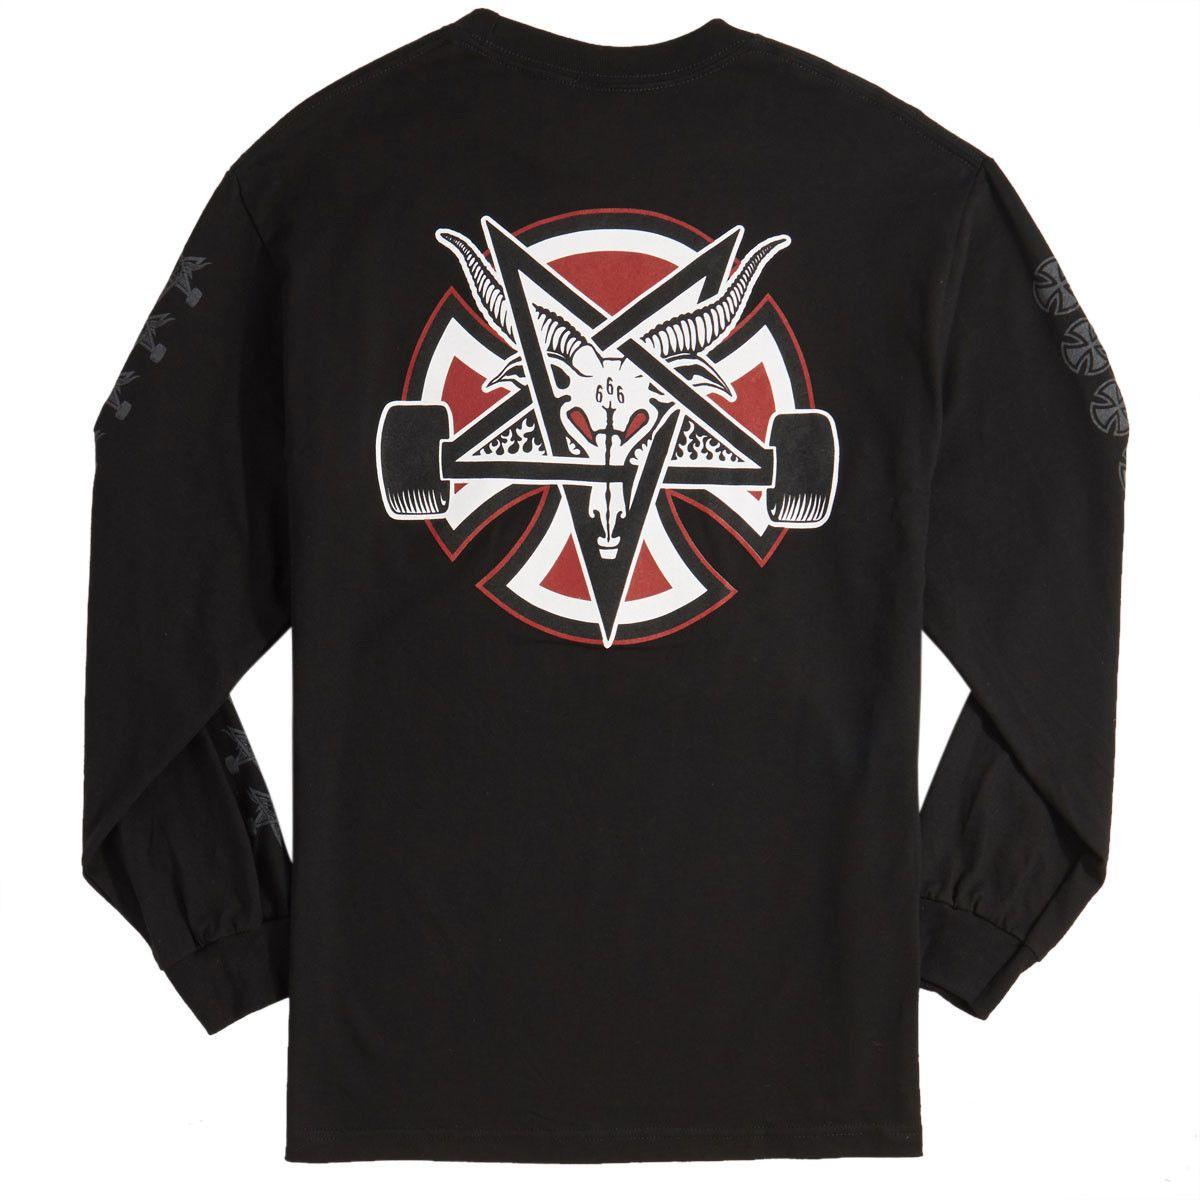 Thrasher Pentagram Logo - Independent X Thrasher Pentagram Cross Long Sleeve T Shirt